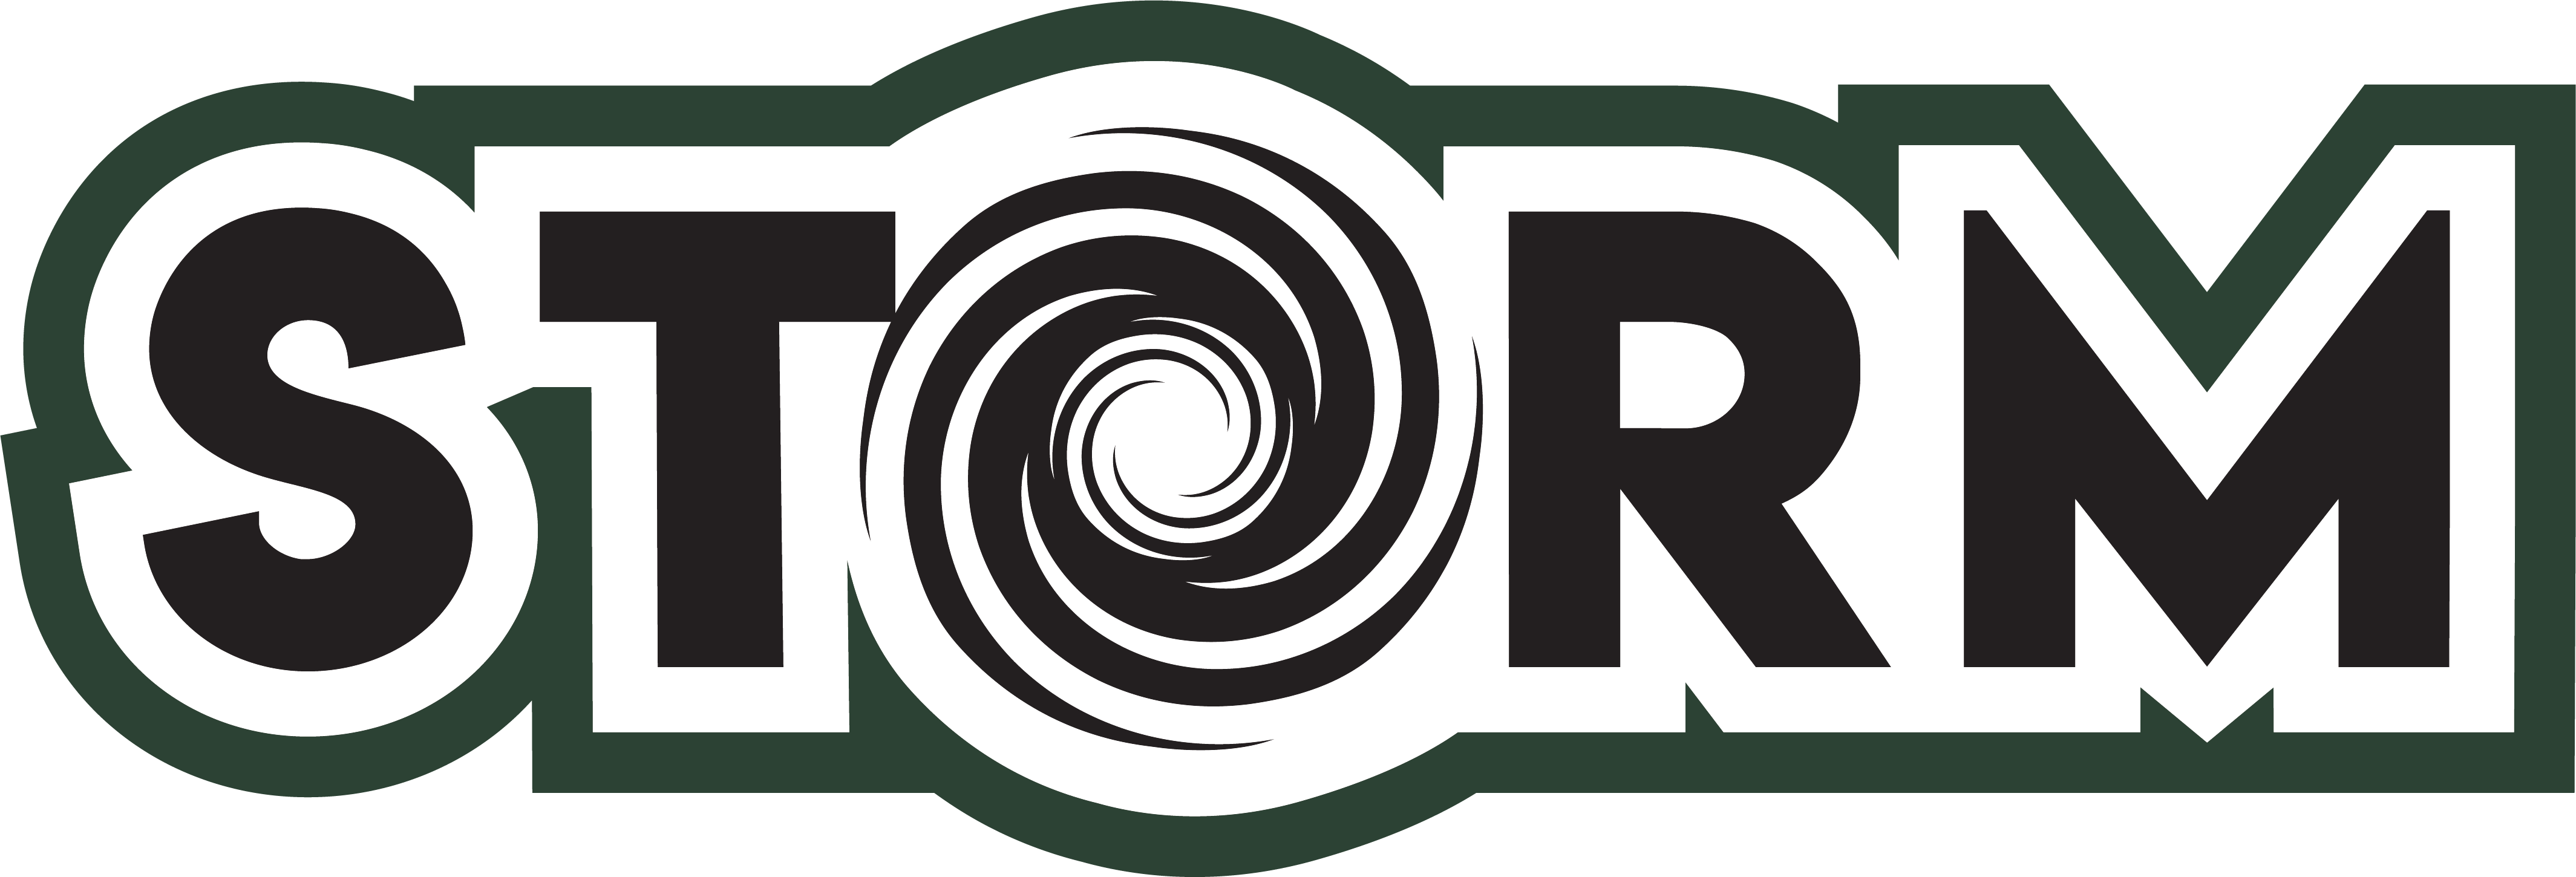 PLC-Storm-Logo2-C-NoPLC